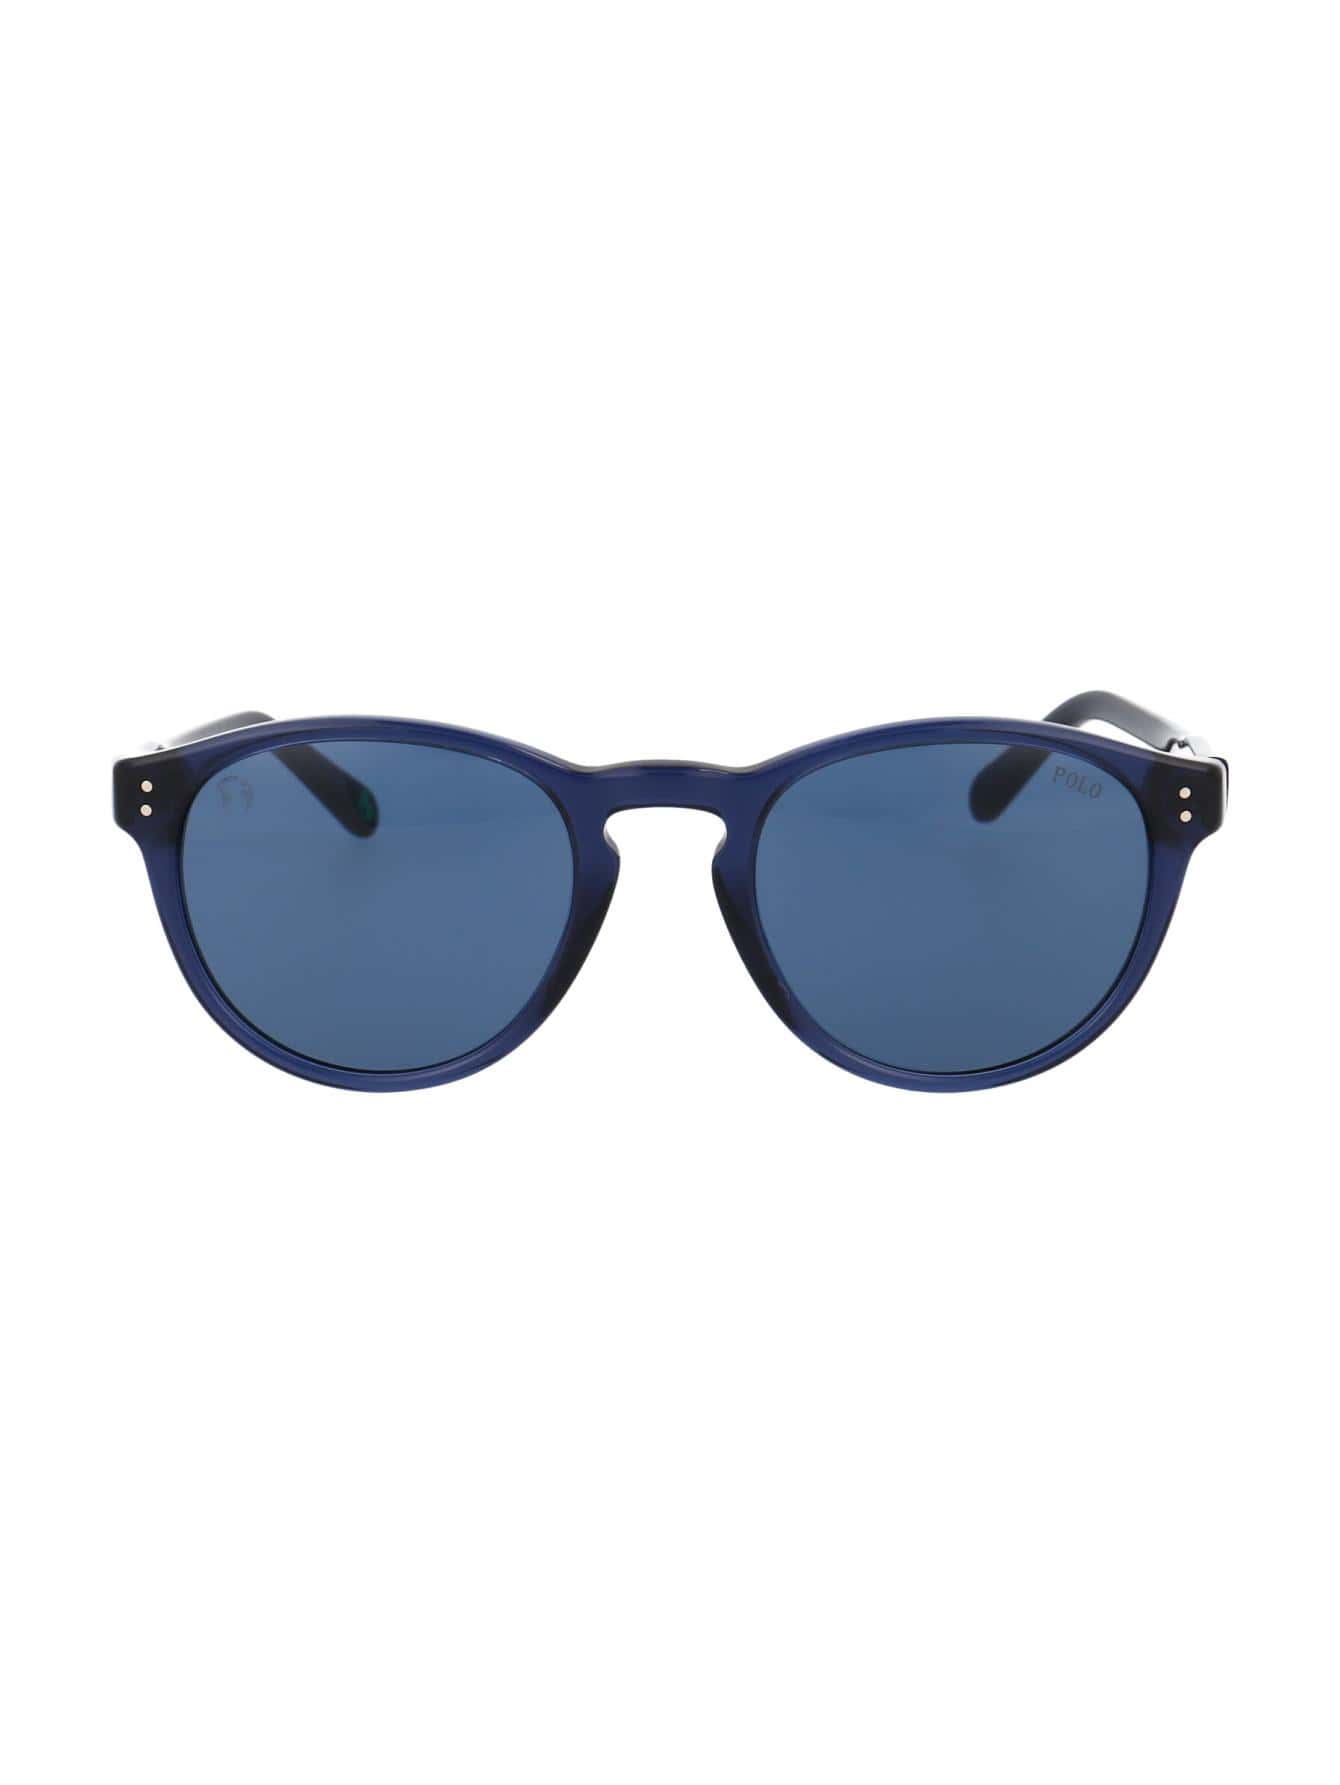 Мужские солнцезащитные очки Polo Ralph Lauren СИНИЕ 0PH4172595580, синий солнцезащитные очки ralph lauren квадратные коричневый